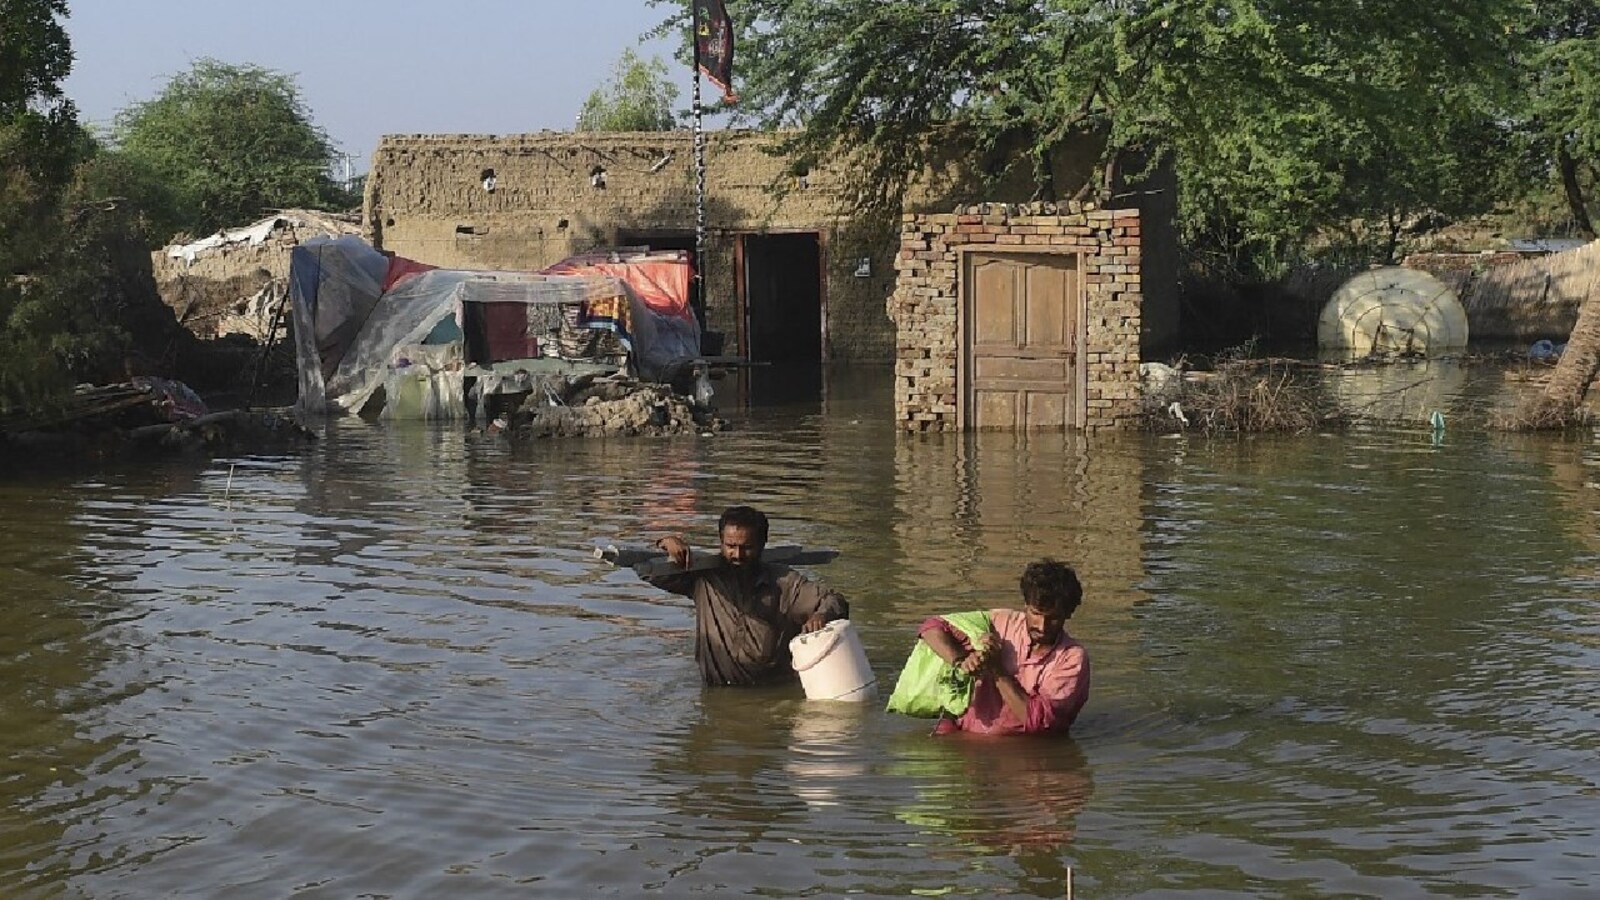 अमेरिका ने बाढ़ प्रभावित पाकिस्तान में 10 मानवीय सहायता मिशन भेजे : पेंटागन 